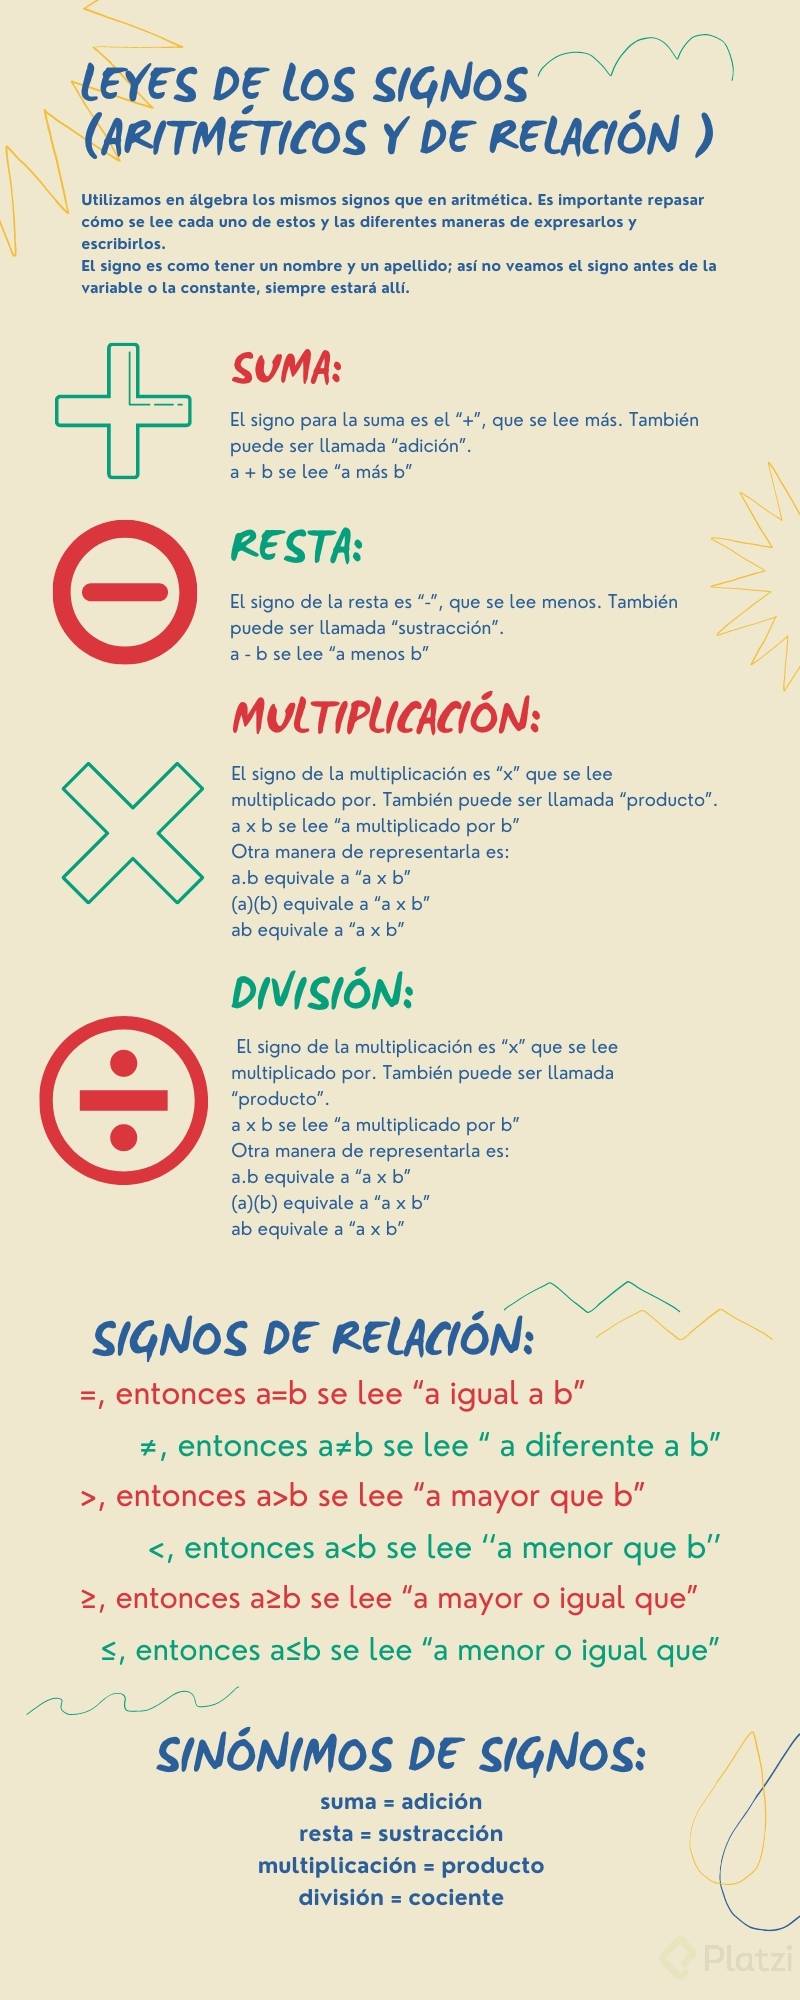 Leyes de los signos (AritmÃ©ticos y de relaciÃ³n ) clase 2-34.jpg